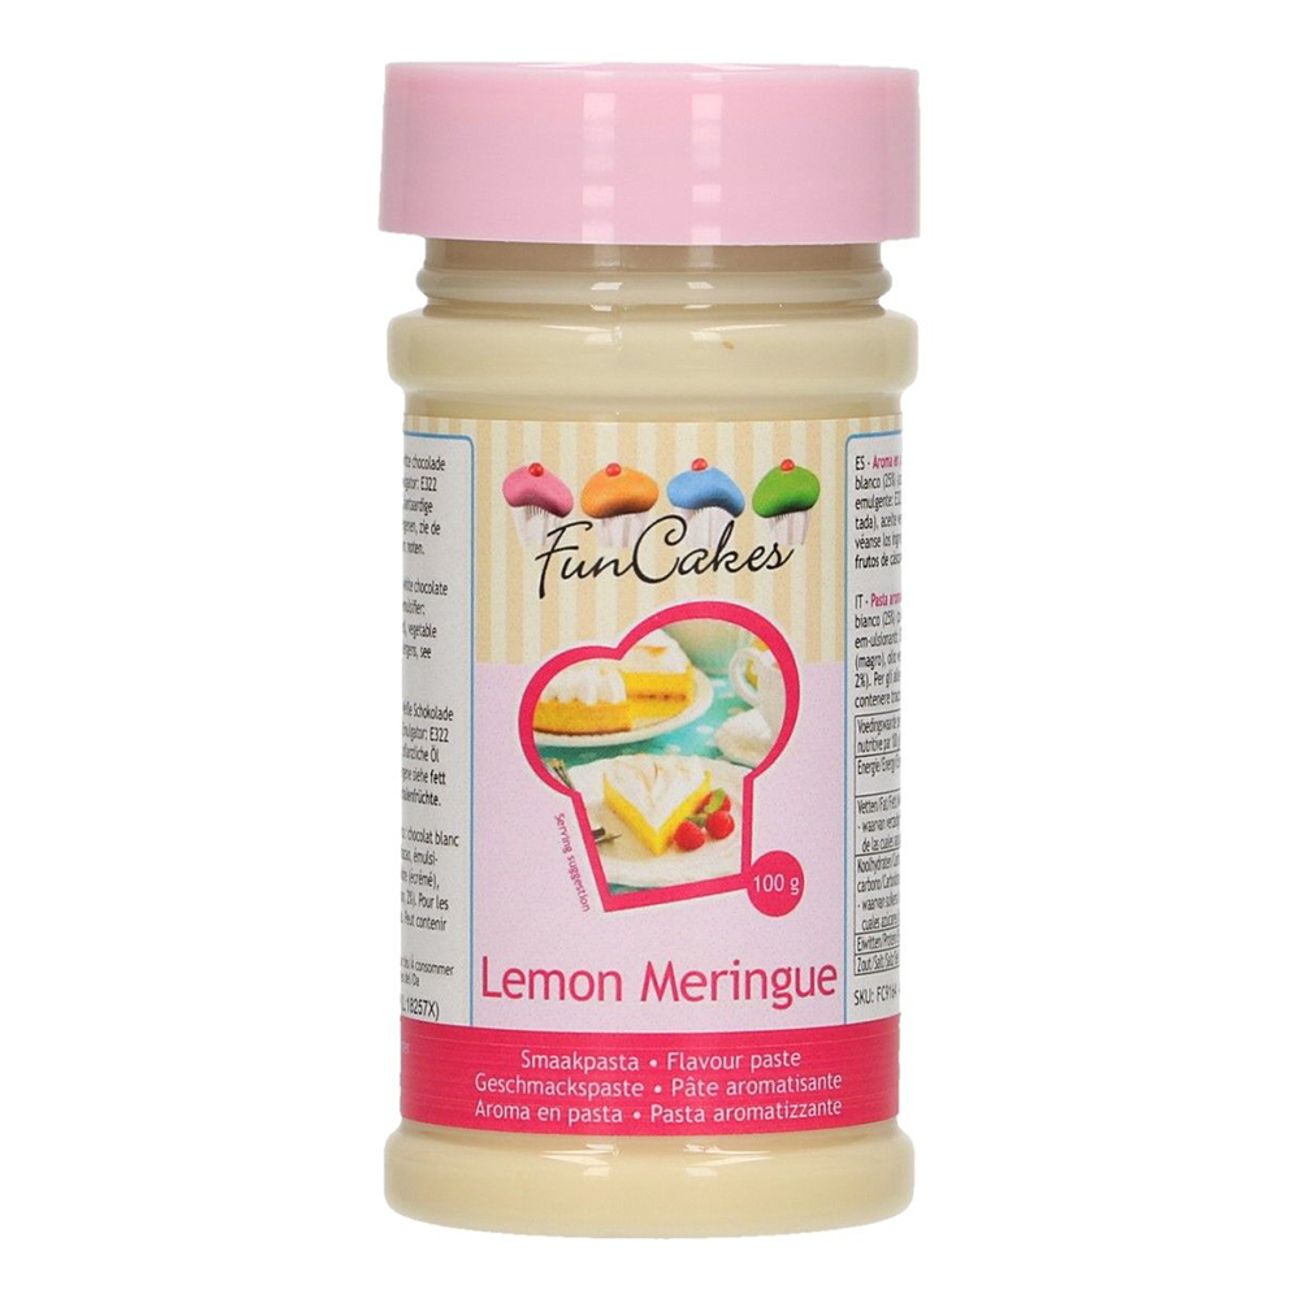 -funcakes-smaksattning-lemon-meringue-75580-1